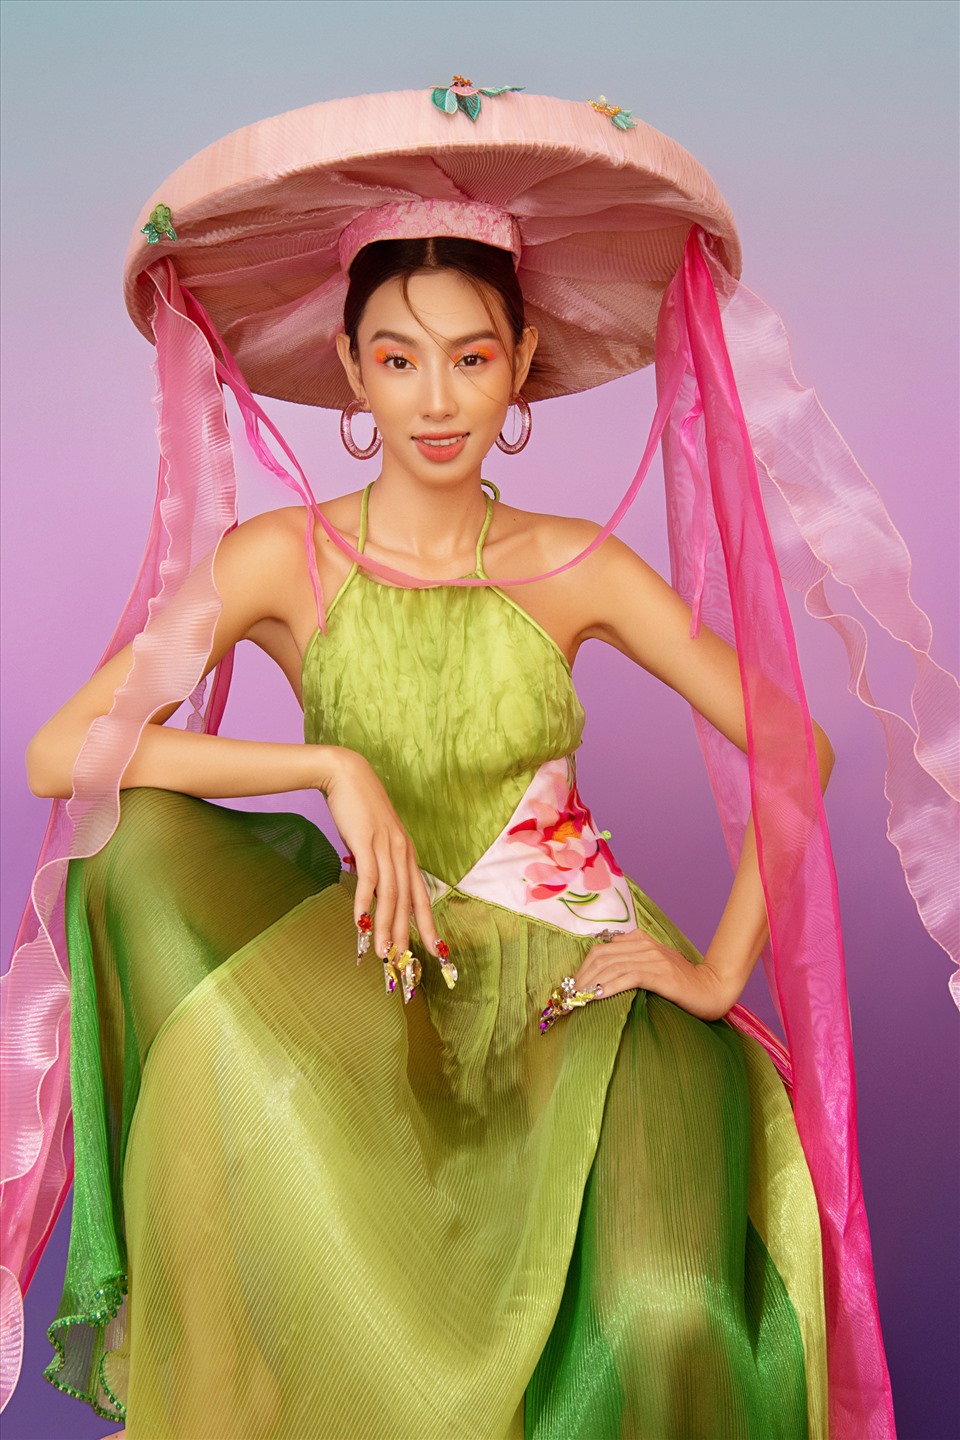 Bộ ảnh Tết lần này của Hoa hậu Thùy Tiên được hòa sắc bởi những gam màu mang đầy sự tươi mới. Loạt trang phục có tông màu chủ đạo là hồng, xanh, đỏ và vàng đã làm bật lên vẻ đẹp của một “nàng xuân” đằm thắm. Tất cả váy áo đều được lấy cảm hứng từ những nét văn hóa đặc trưng trong trang phục của người Việt Nam.